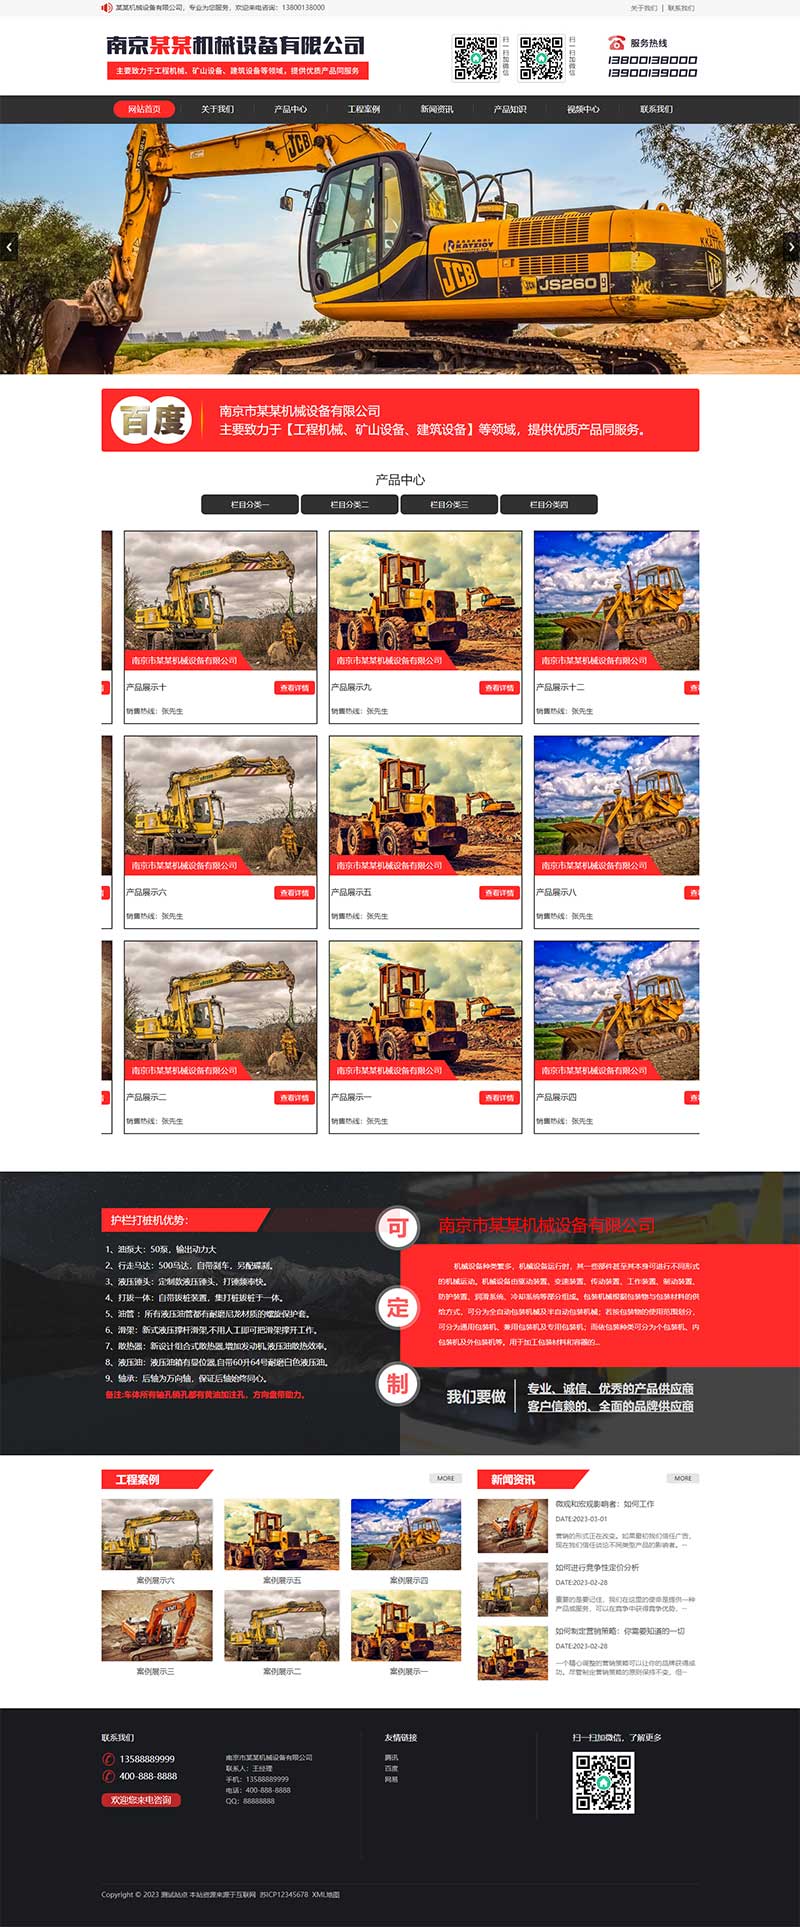 (PC+手机版)黑红风格挖掘机工程机械类企业网站源码电脑端展示图片